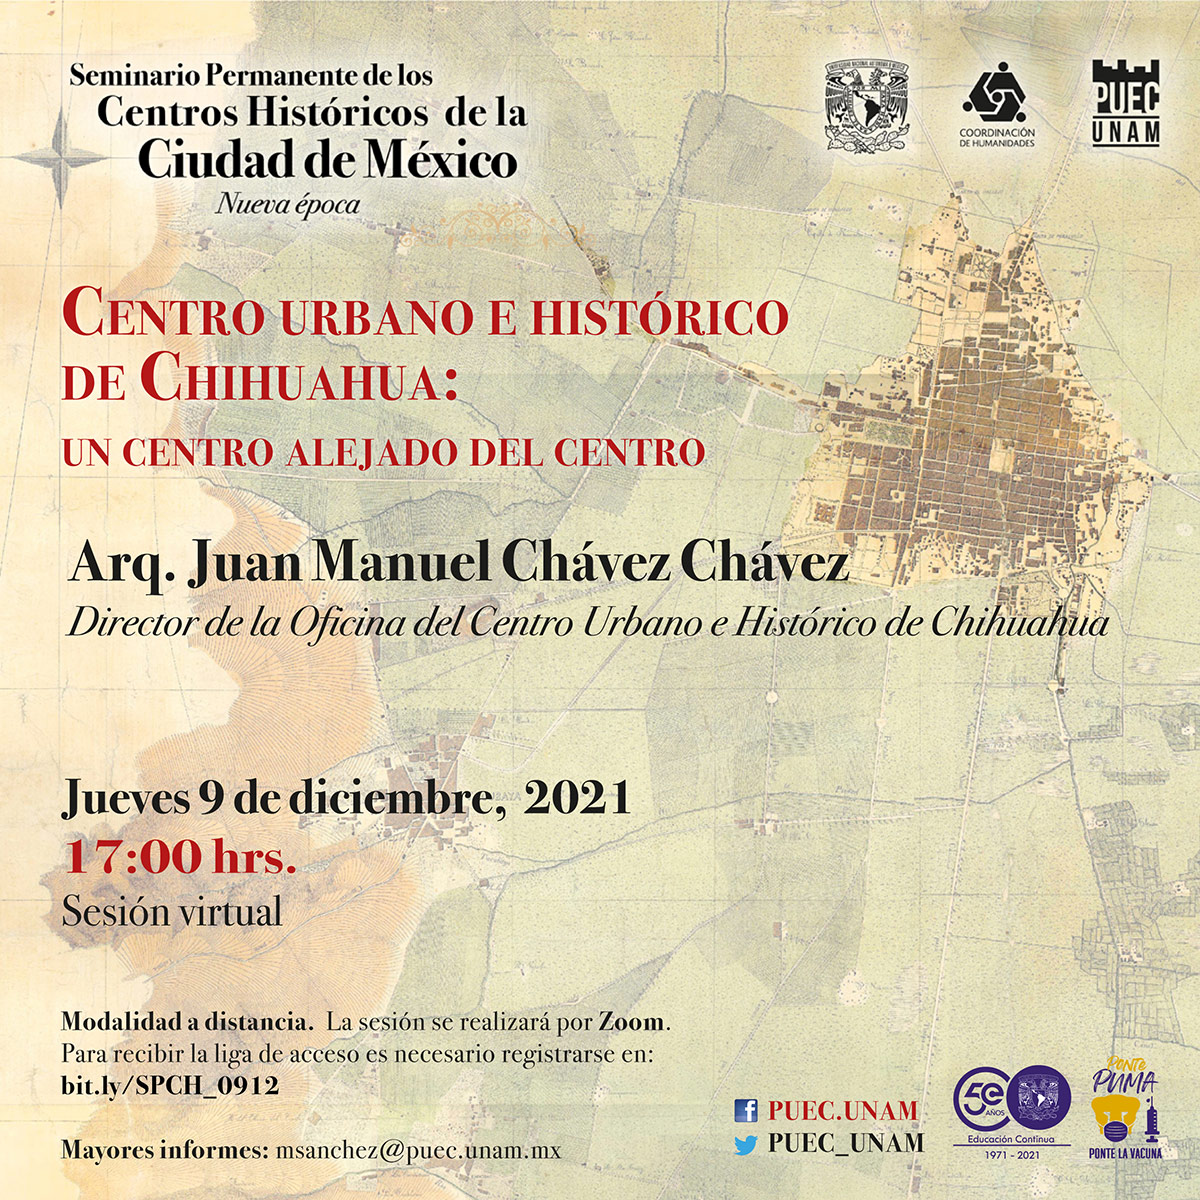 Centro urbano e histórico de Chihuahua: un centro alejado del centro